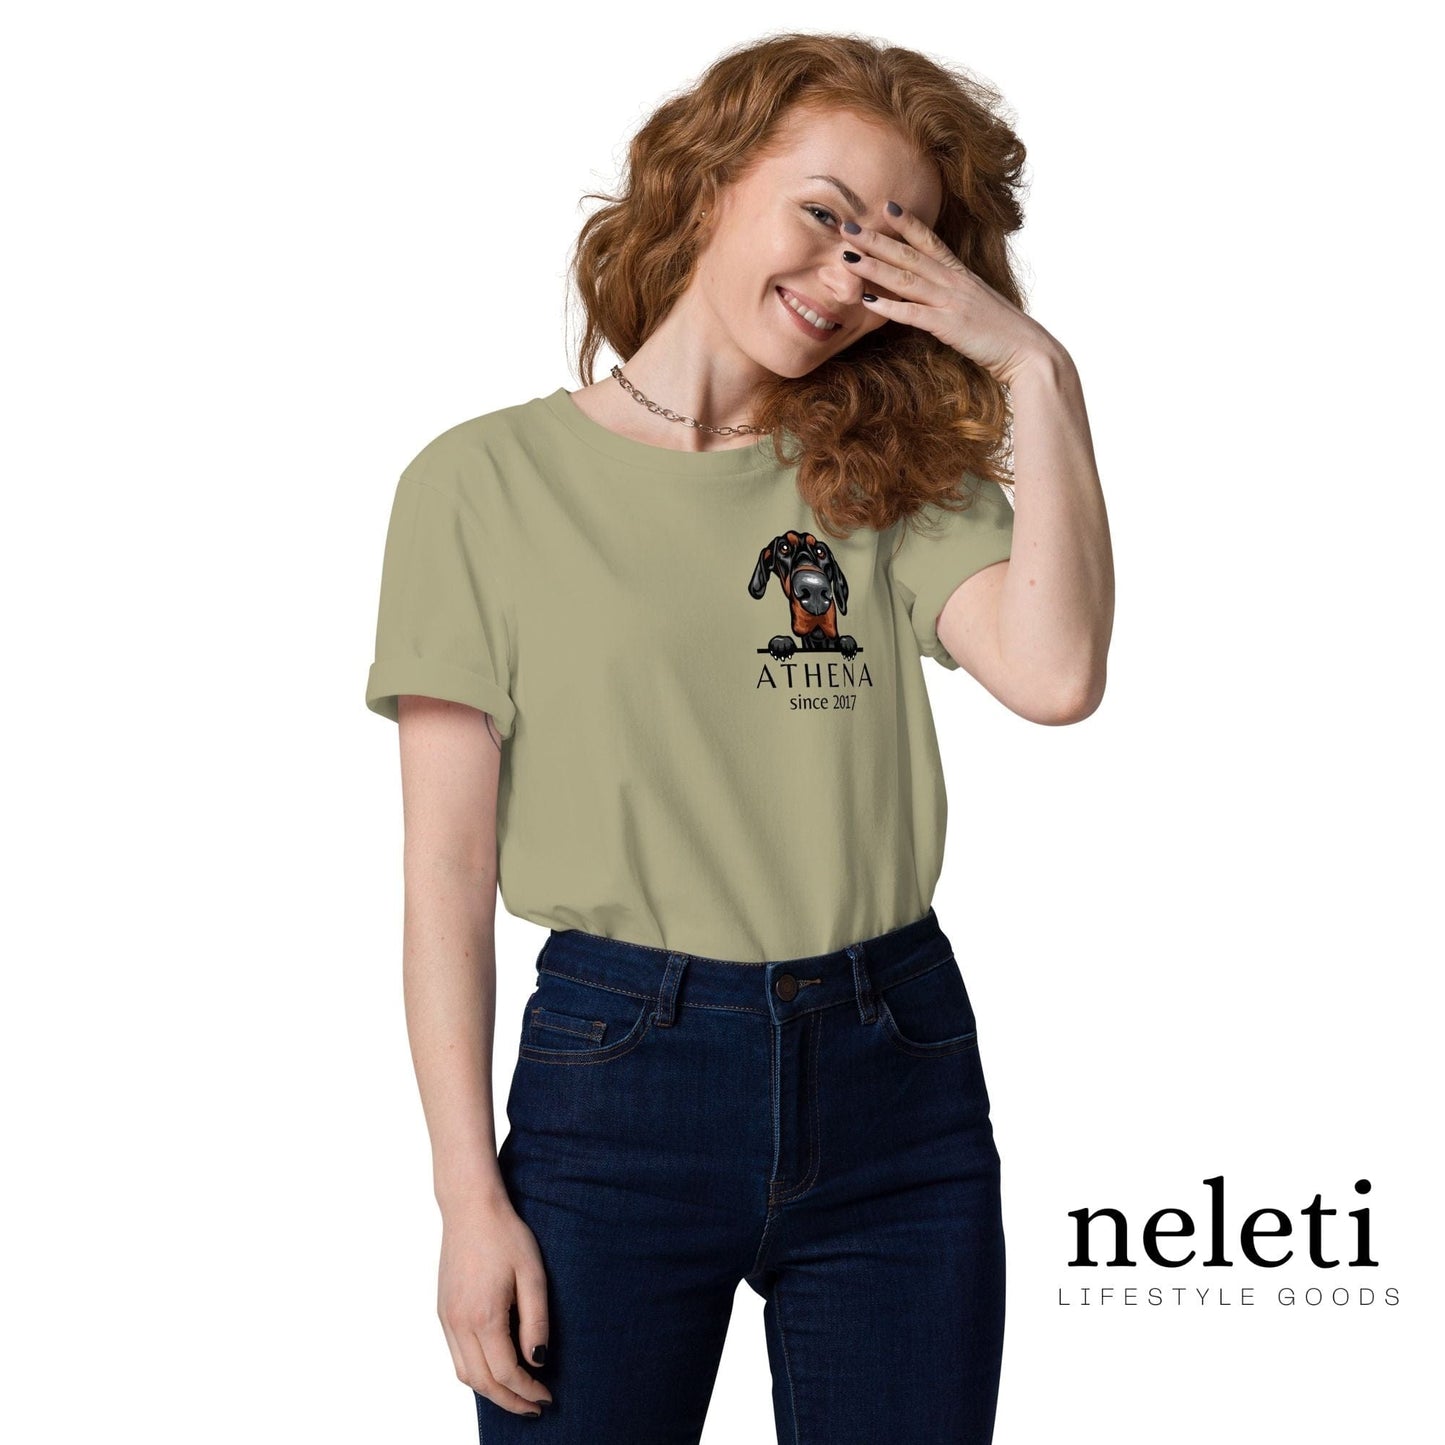 neleti.com-custom-sage-shirt-for-dog-mom